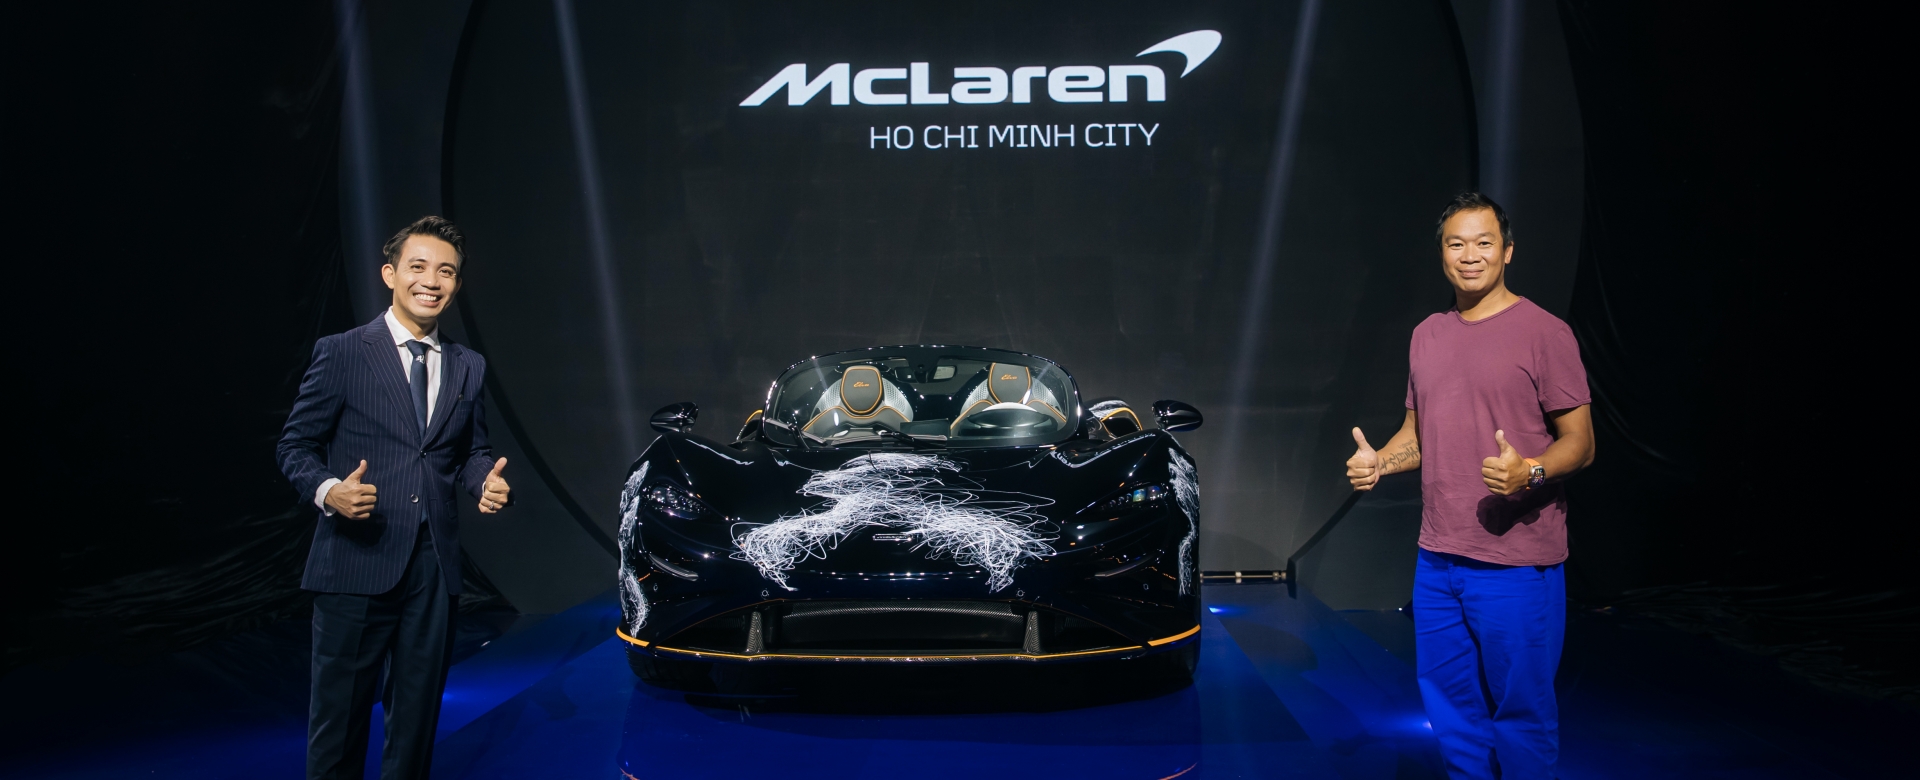 McLaren Elva – Khi công nghiệp xe hơi giao thoa nghệ thuật đương đại